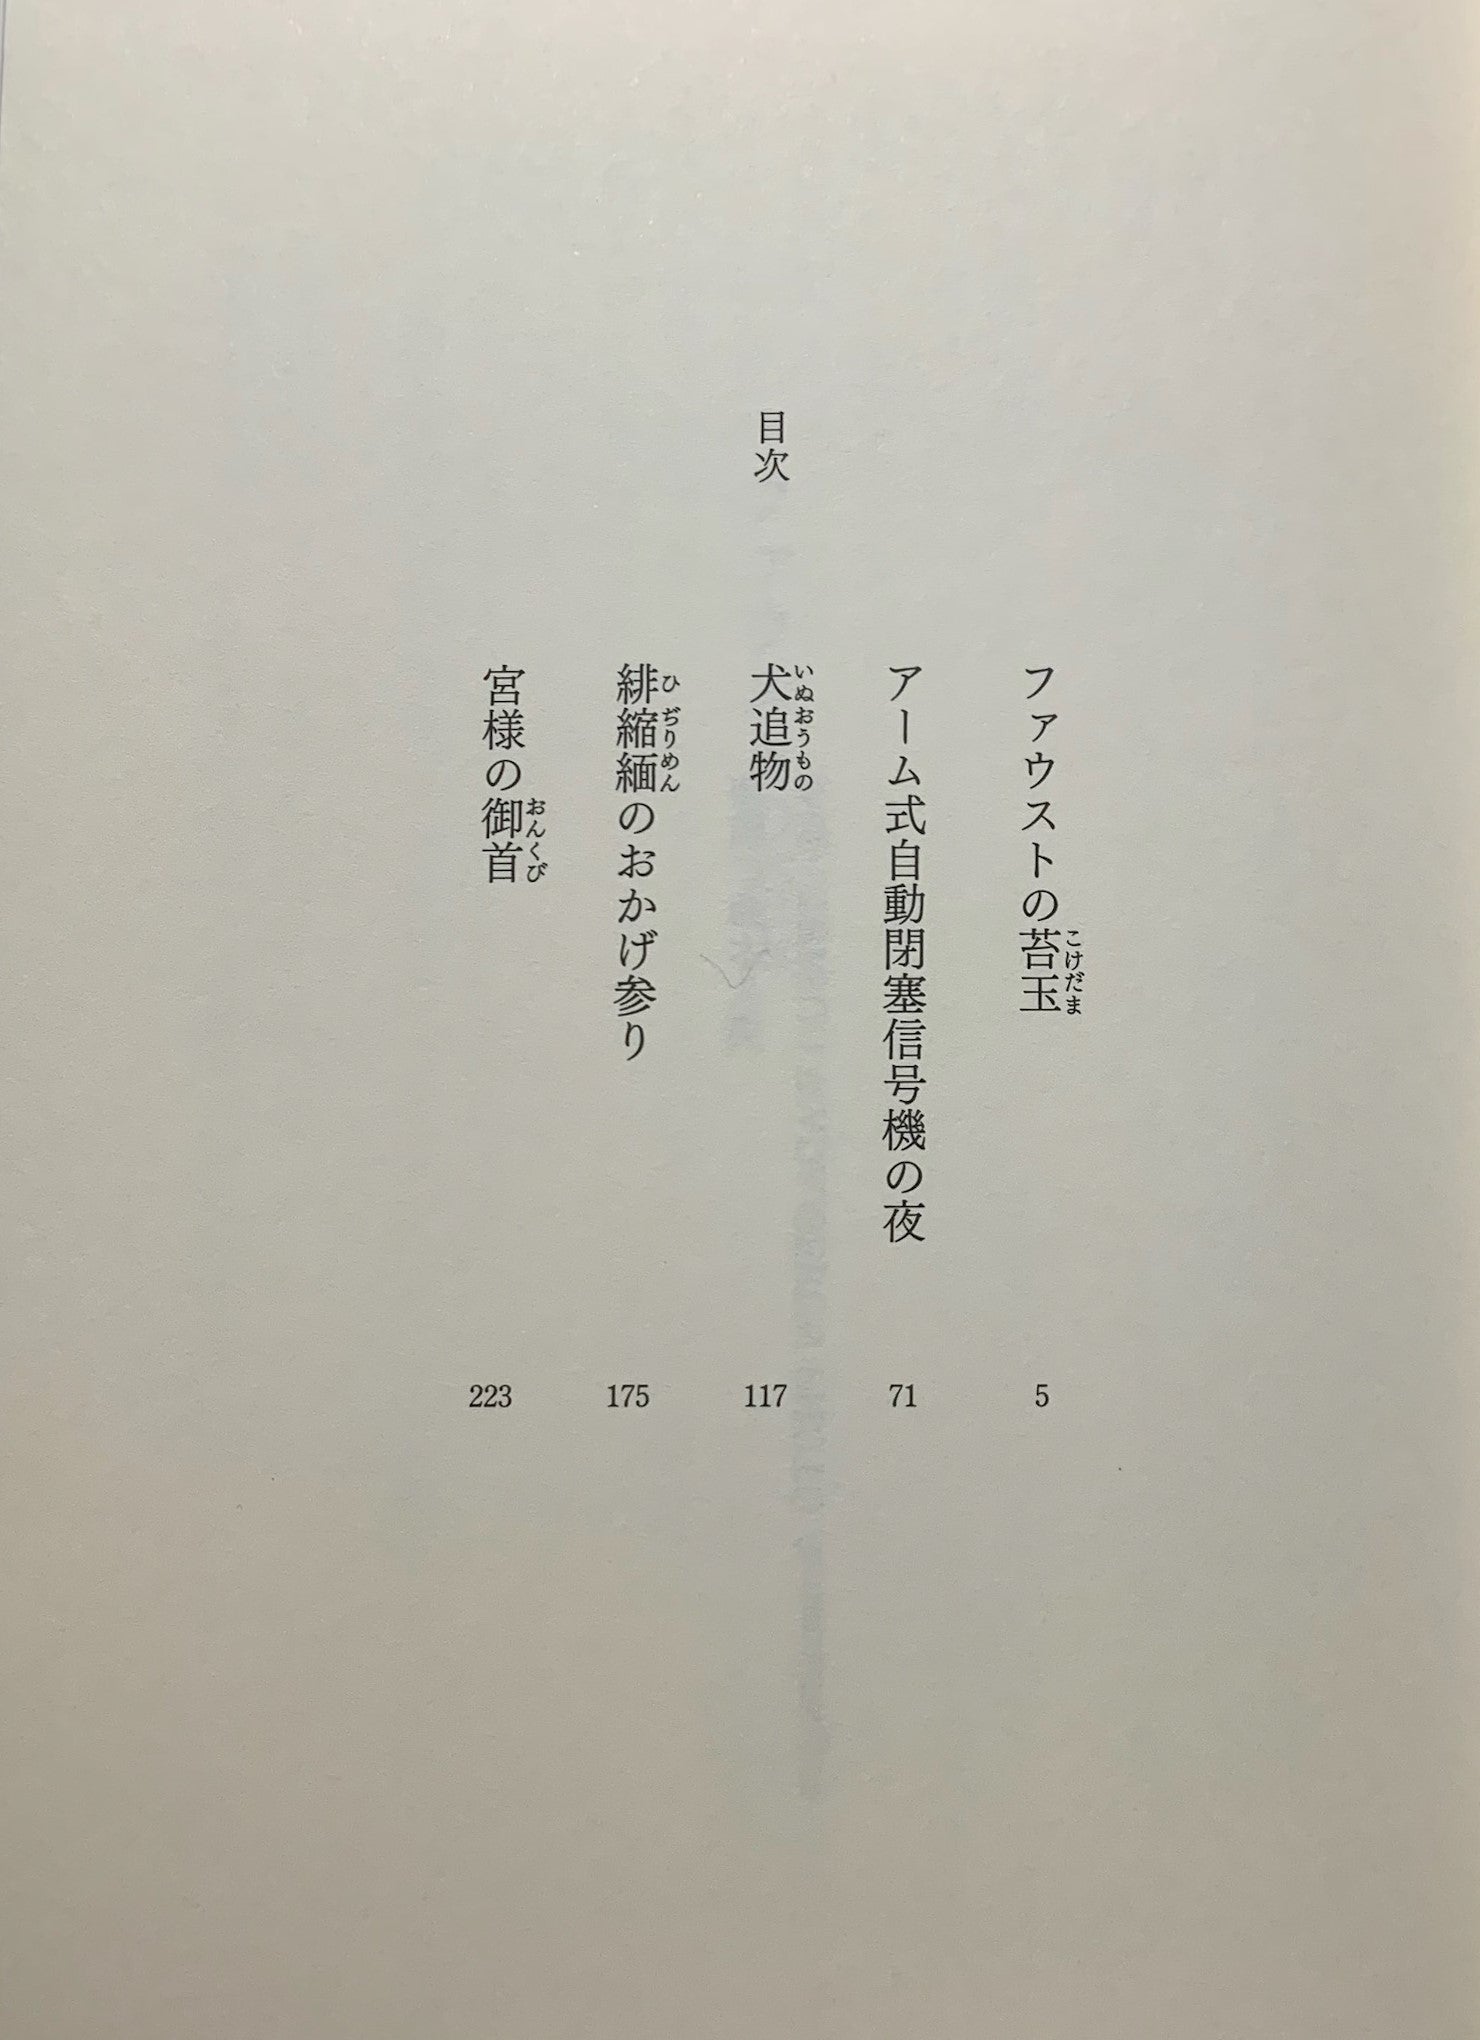 遠田潤子『邂逅(わくらば)の滝』 | ｢月球儀」＆「芭蕉座」 俳句を書く